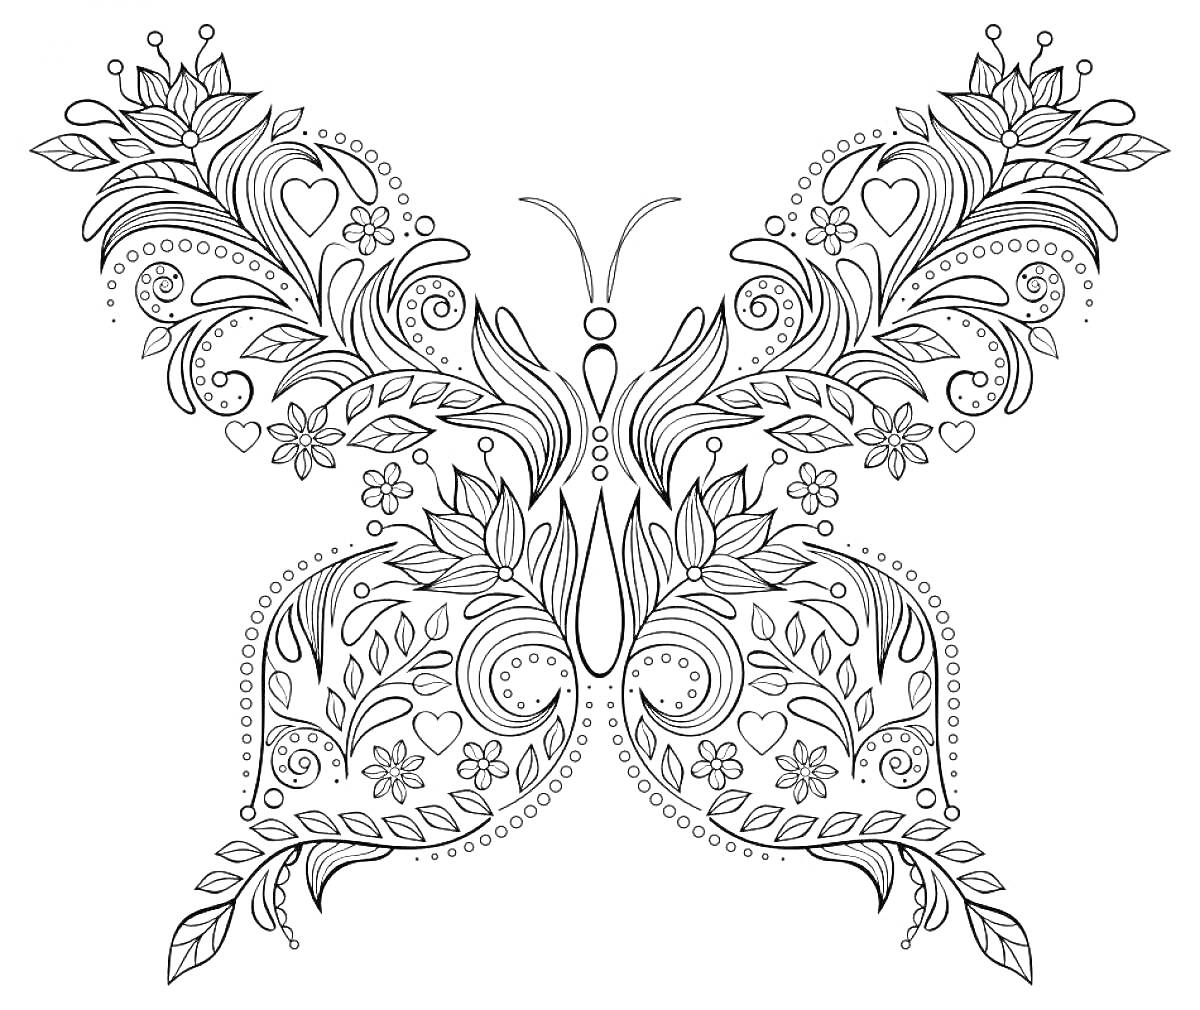 Бабочка с узорами из листьев и цветов, окруженная маленькими декоративными элементами